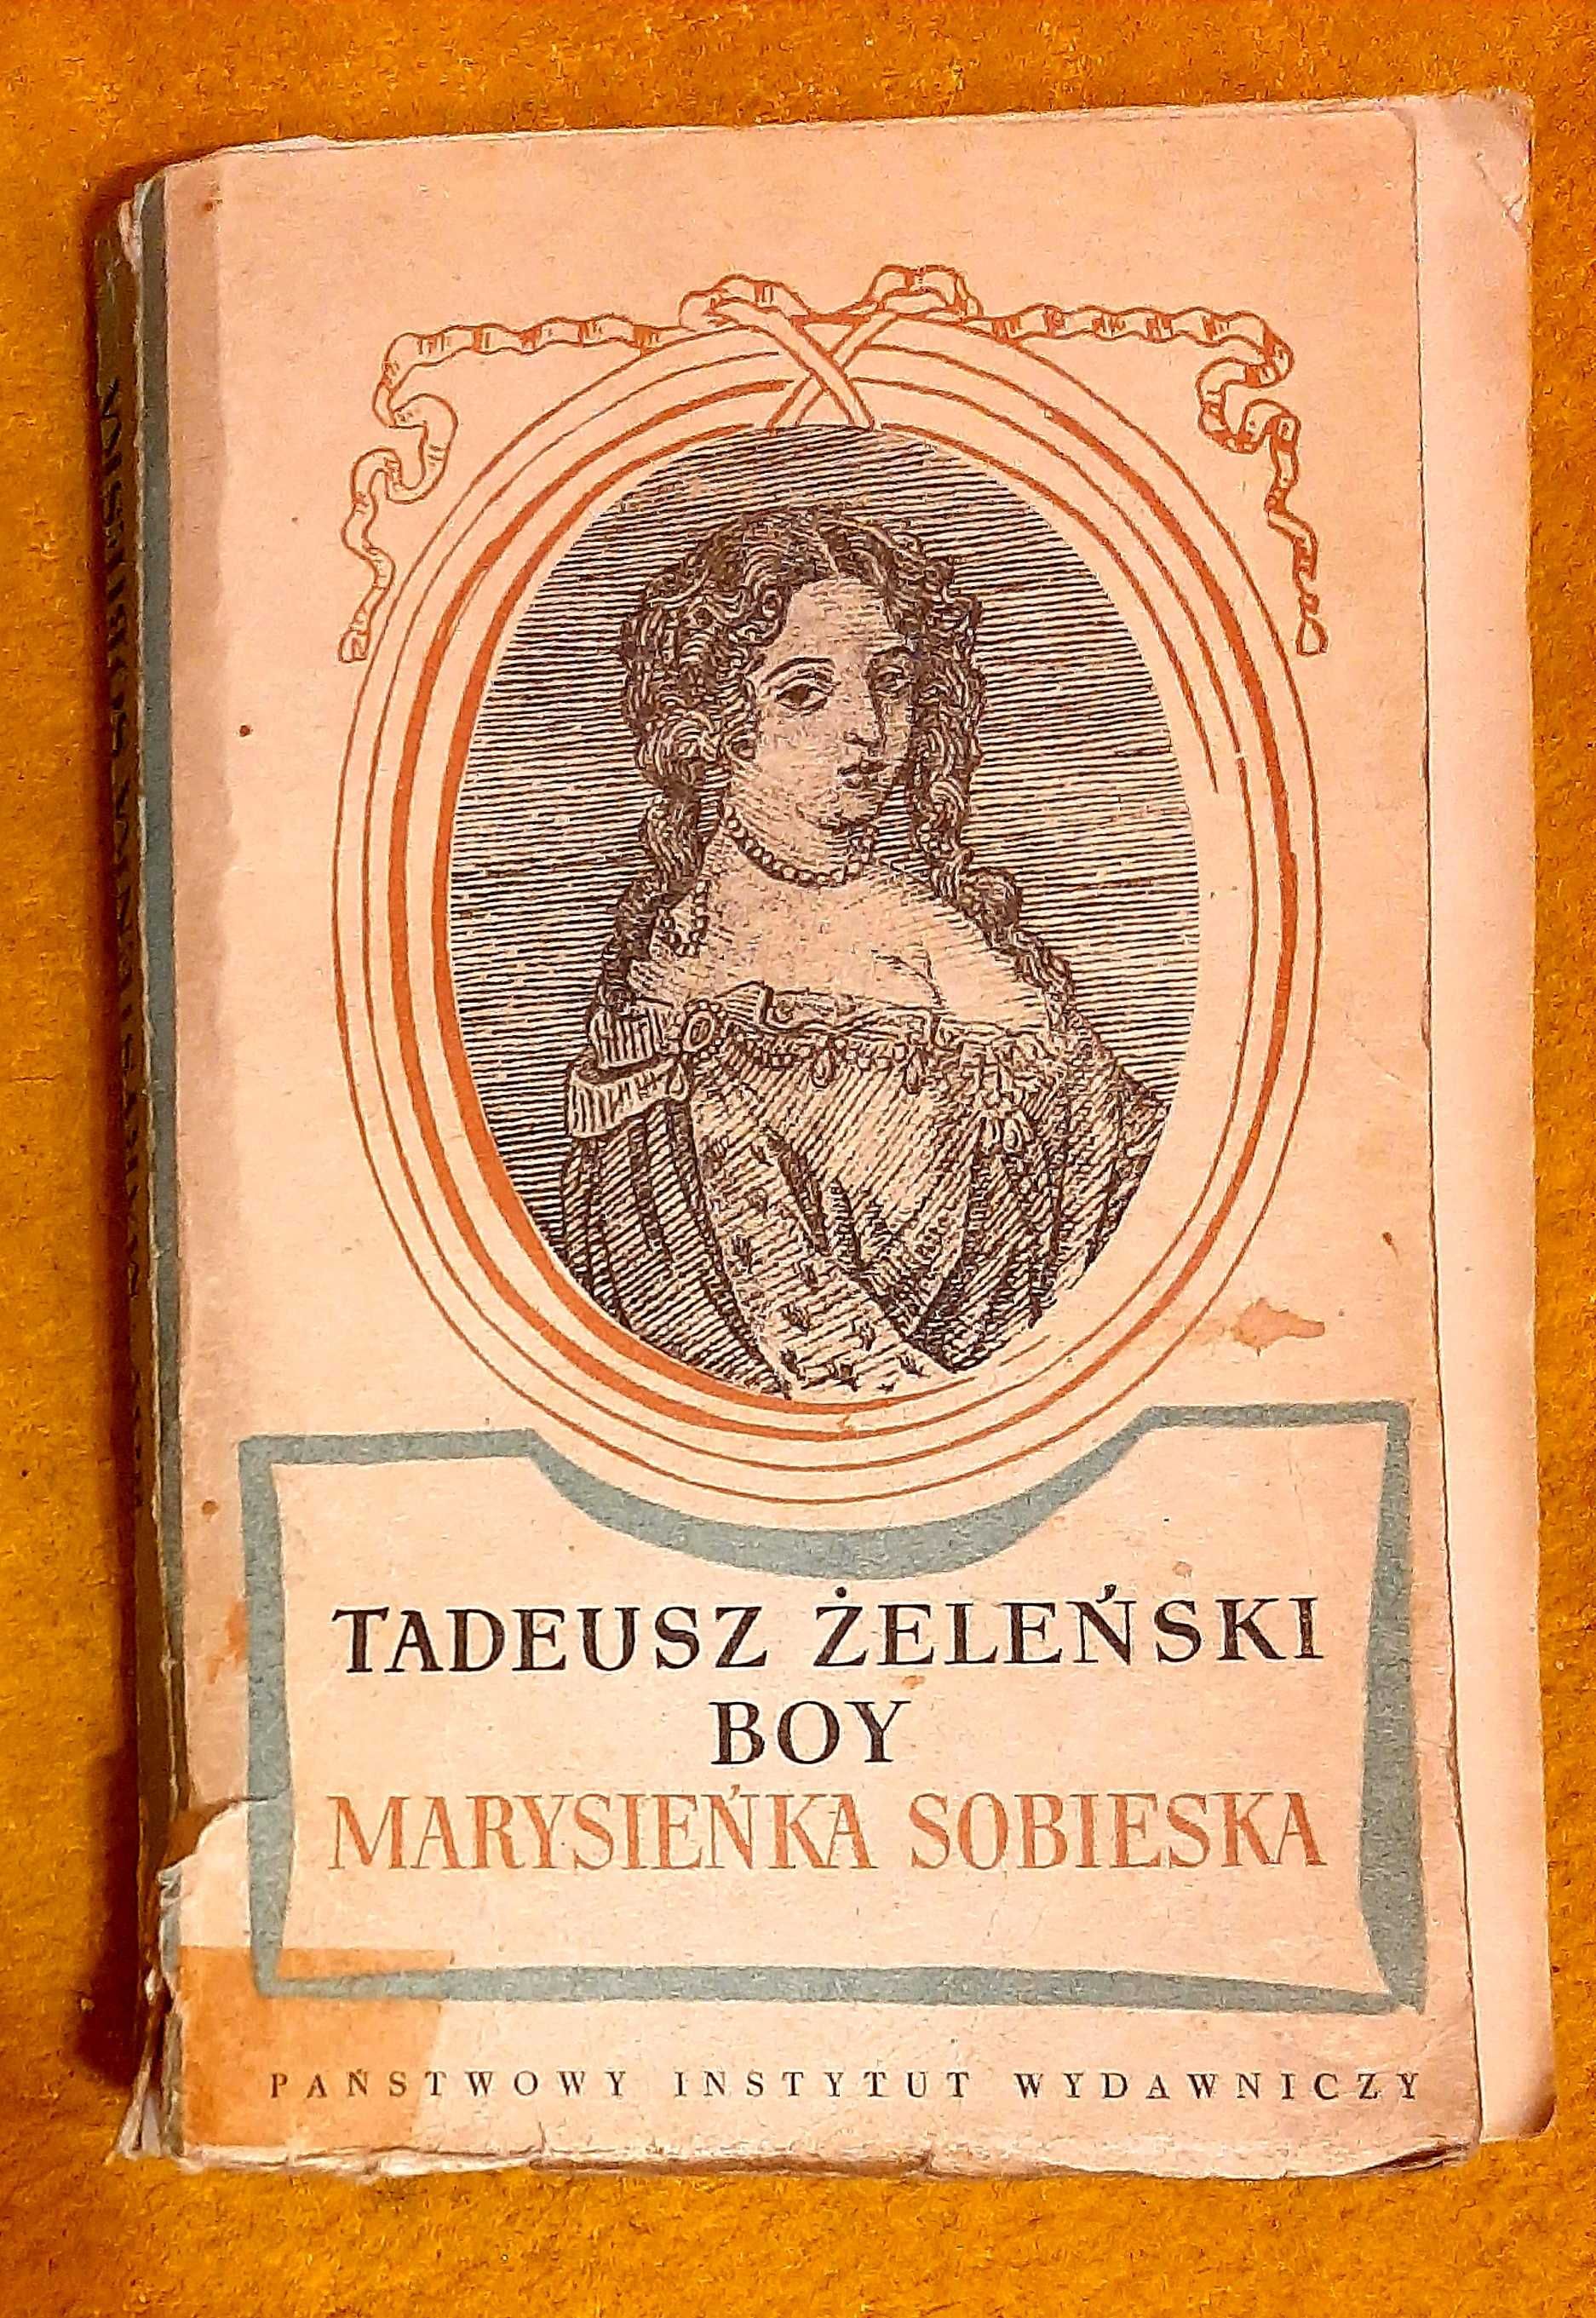 Boy Żeleński, Marysieńka Sobieska